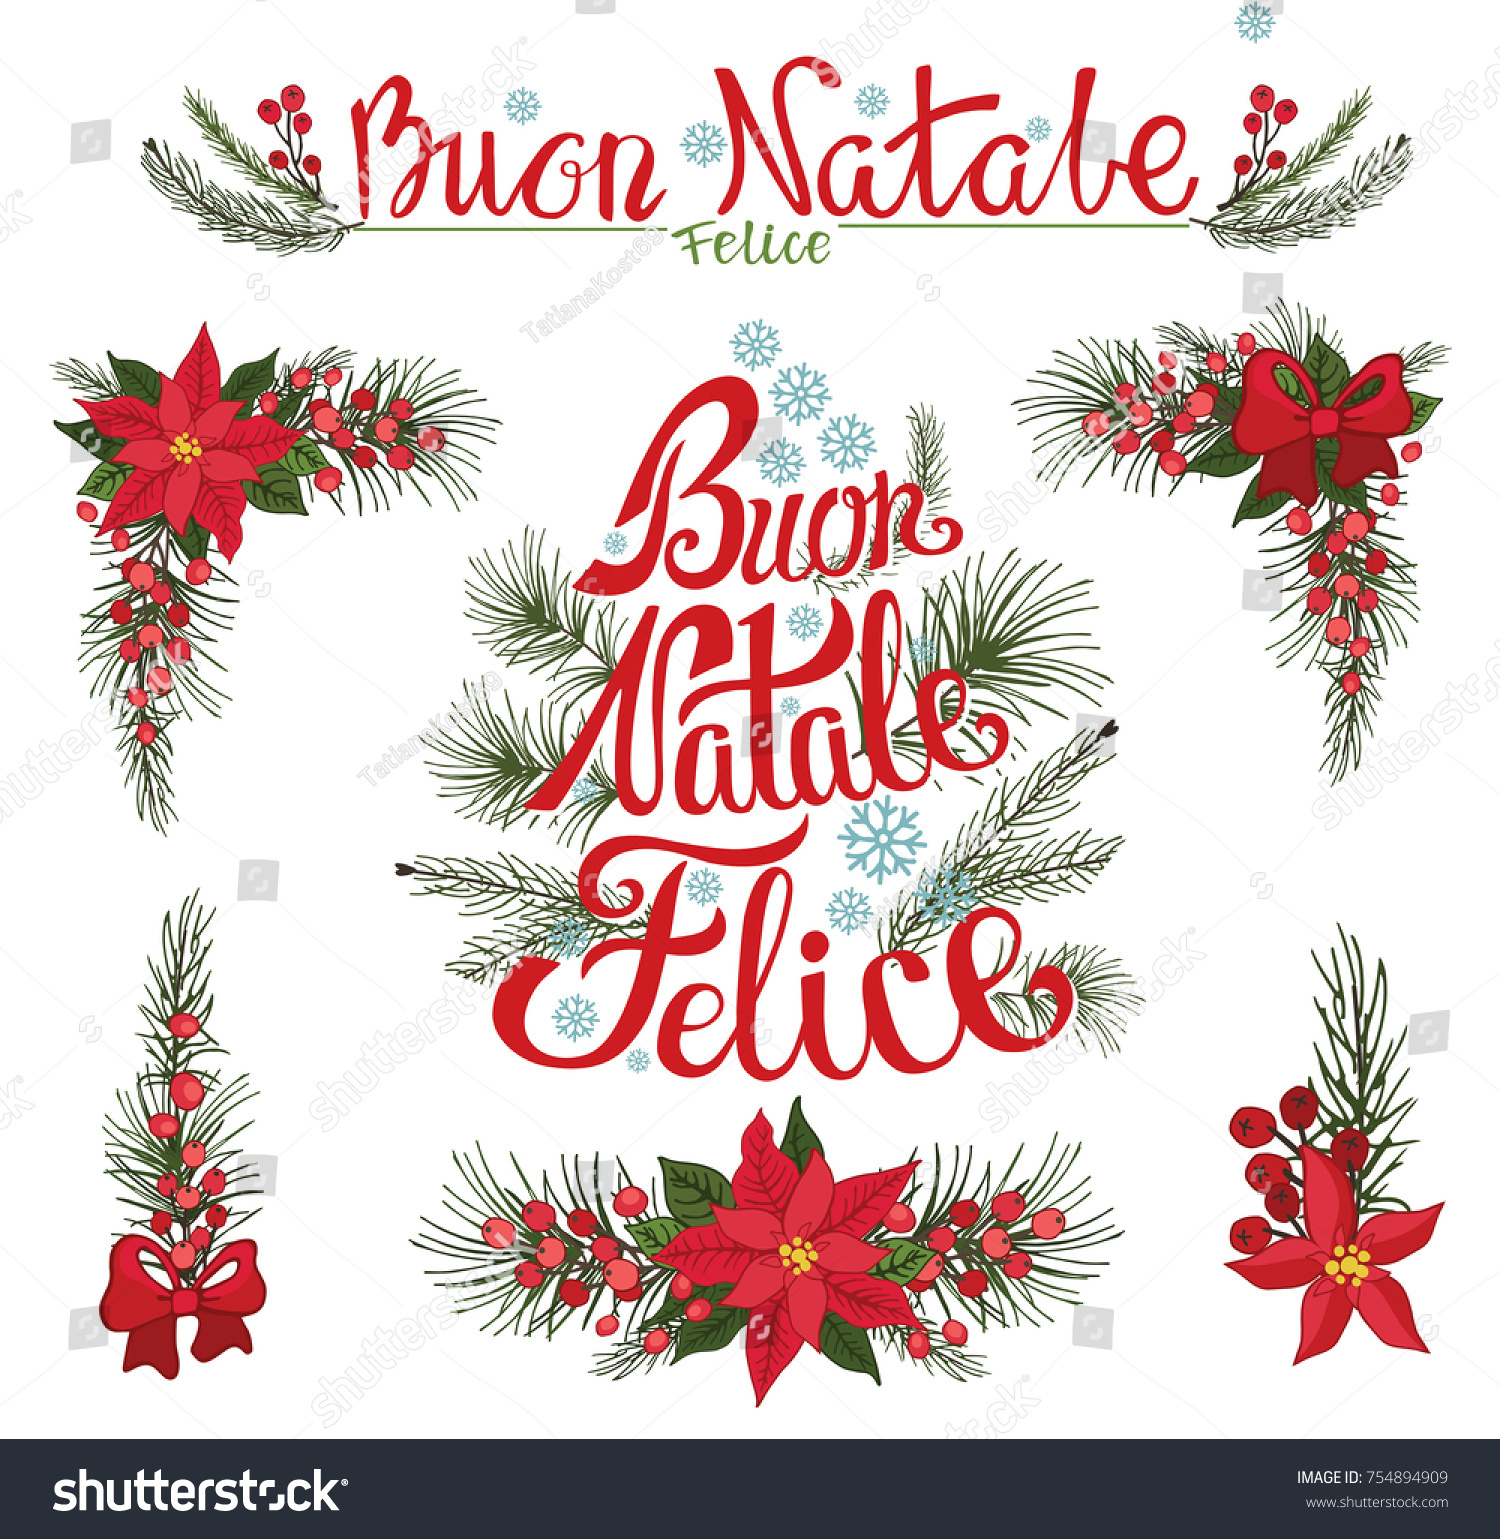 Buon Natale Italian.Christmas Buon Natale Italian Lettering New Stock Vector Royalty Free 754894909